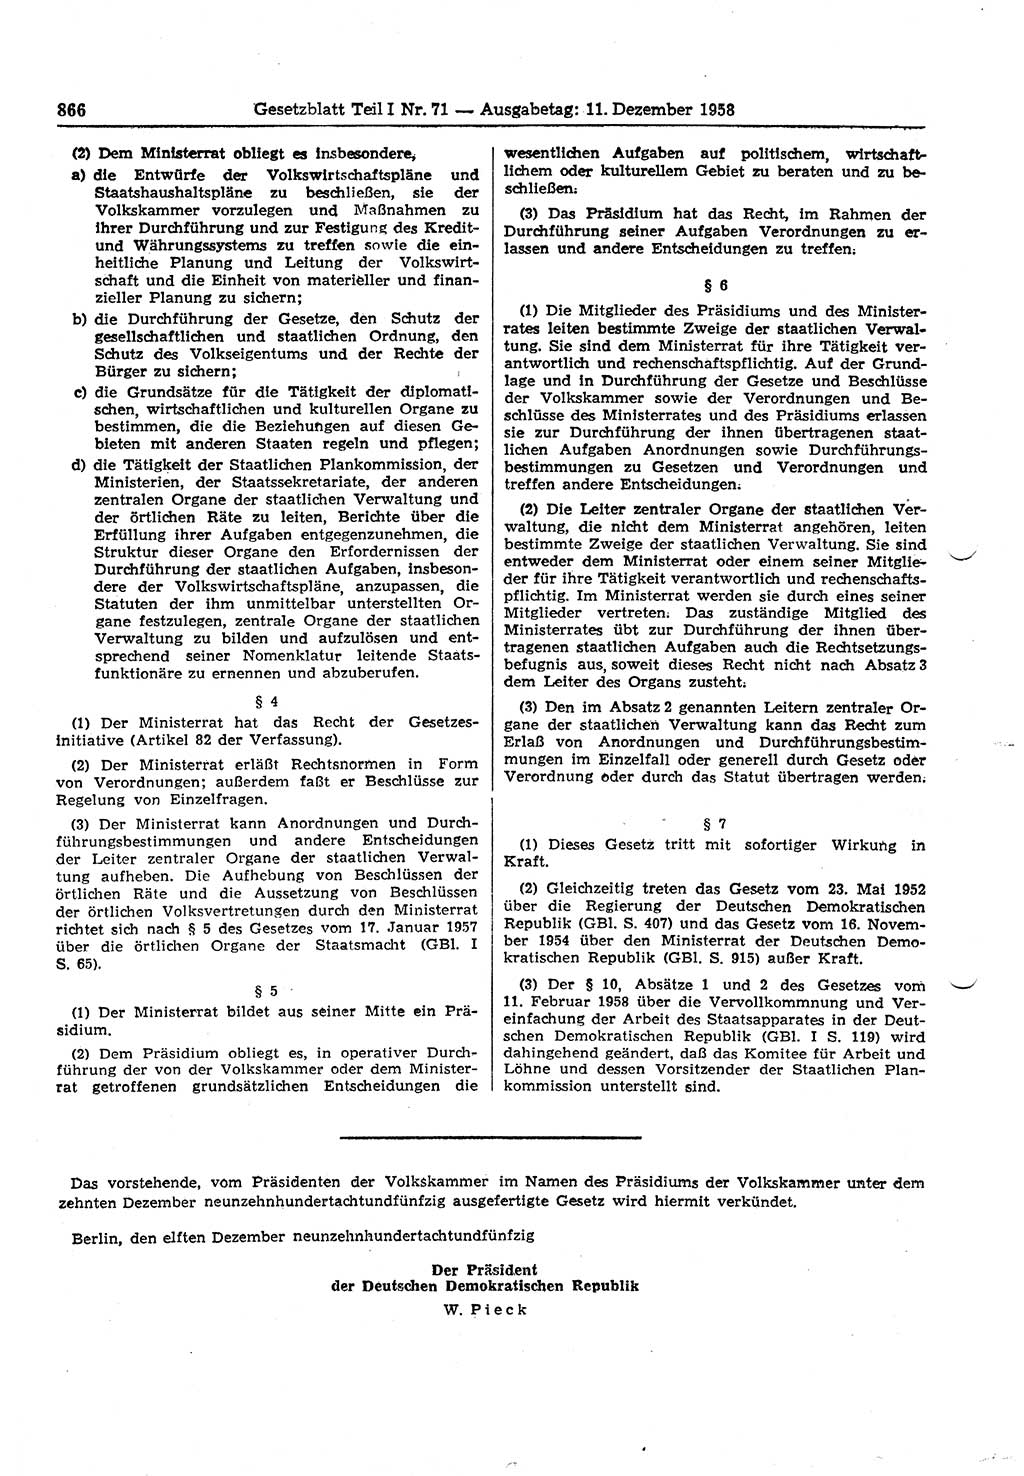 Gesetzblatt (GBl.) der Deutschen Demokratischen Republik (DDR) Teil Ⅰ 1958, Seite 866 (GBl. DDR Ⅰ 1958, S. 866)